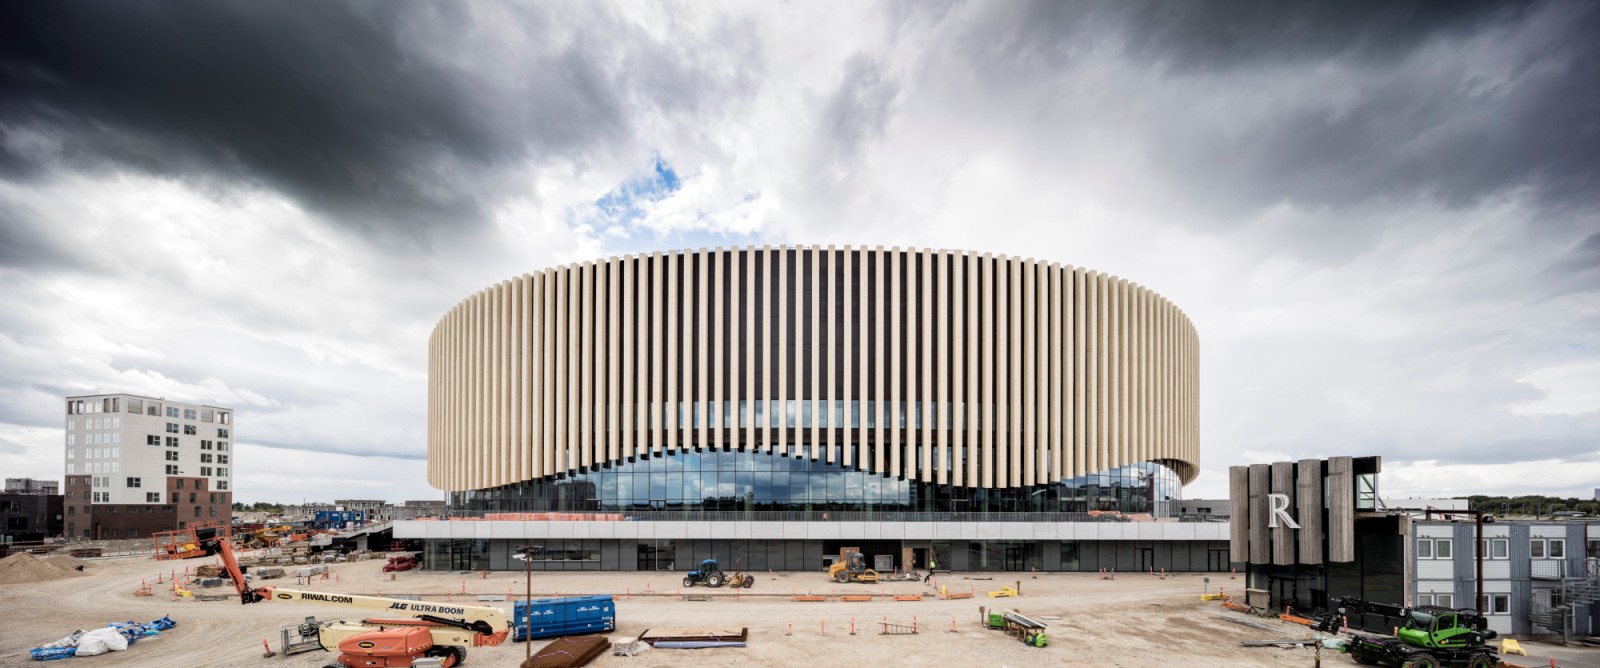 New Royal Arena in Copenhagen